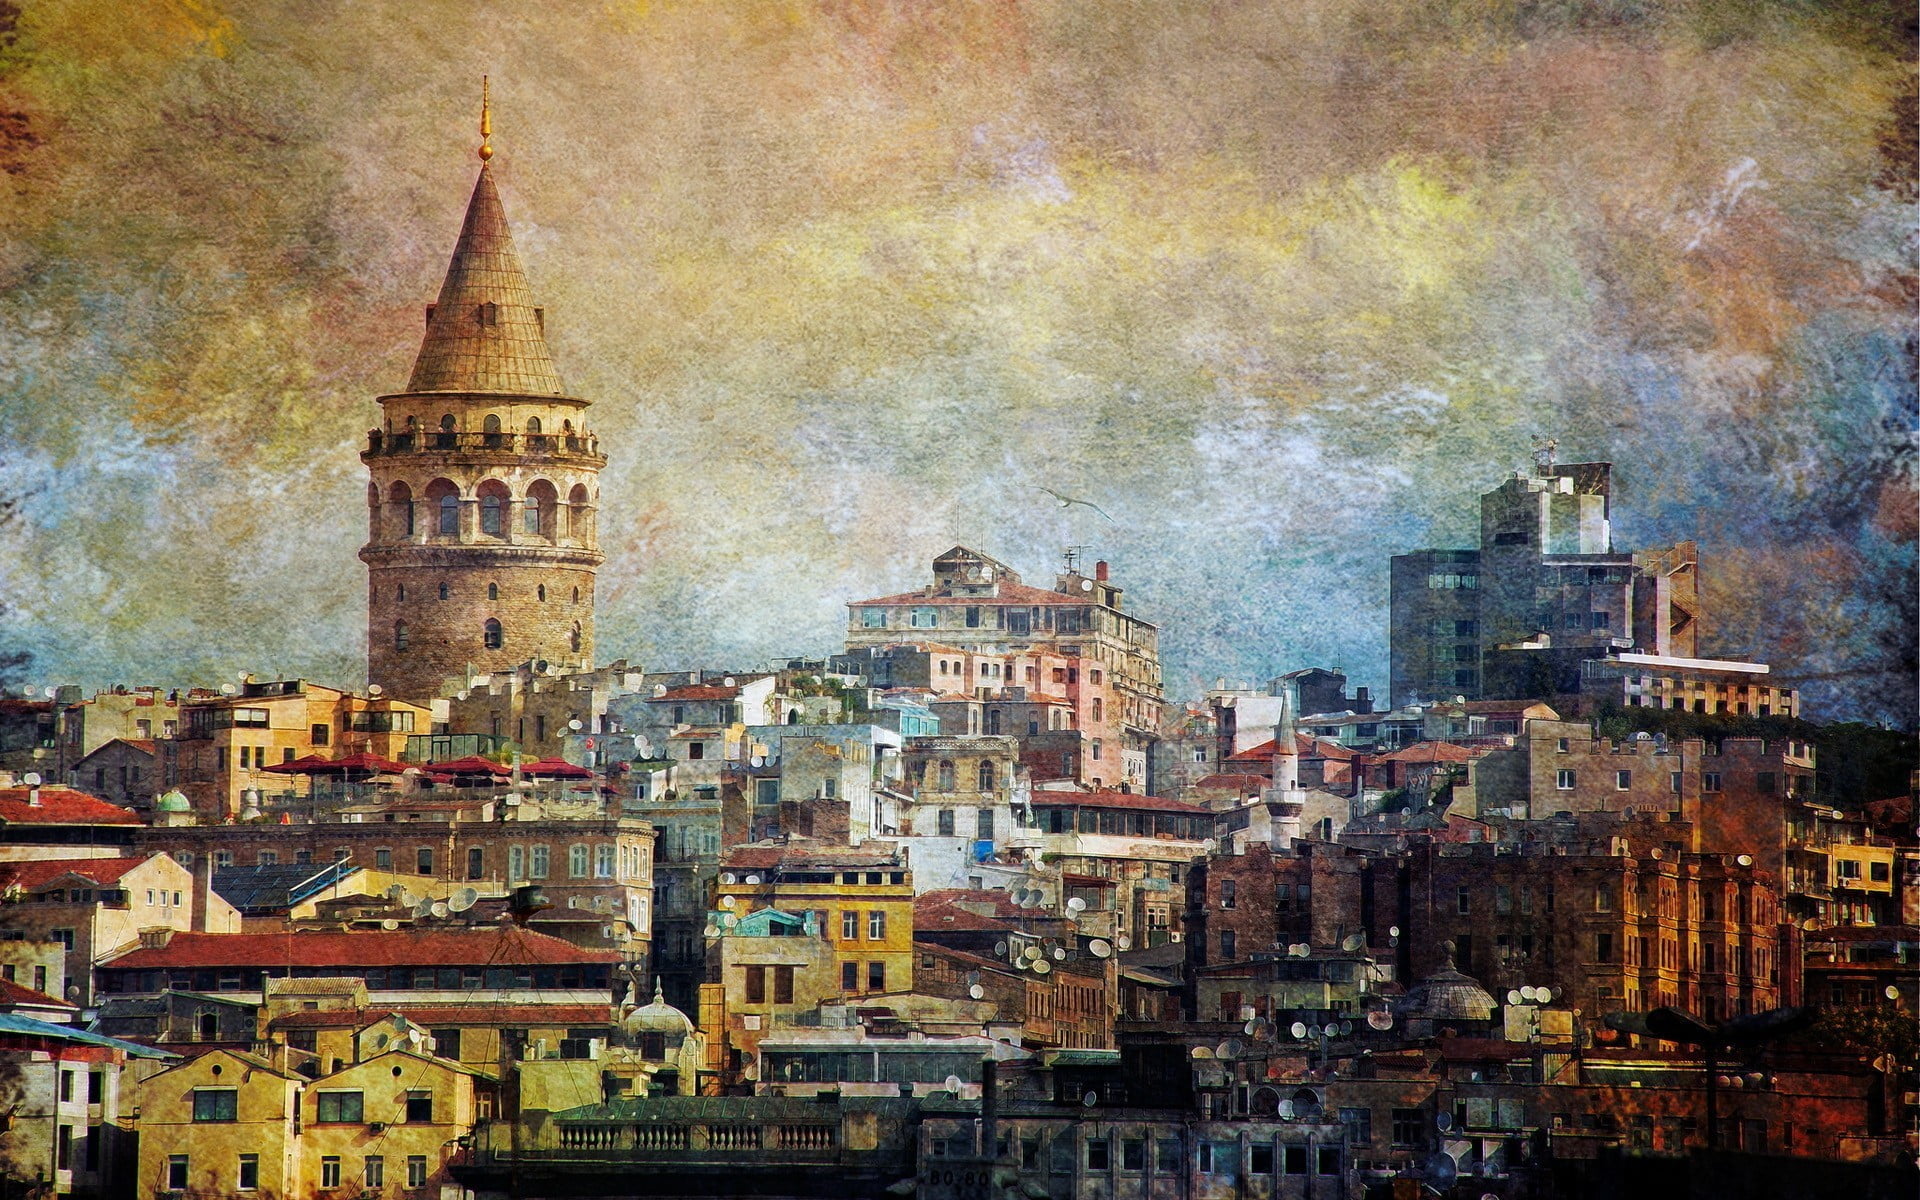 painting of Galata tower, Istanbul, Turkey, galata, Galata Kulesi